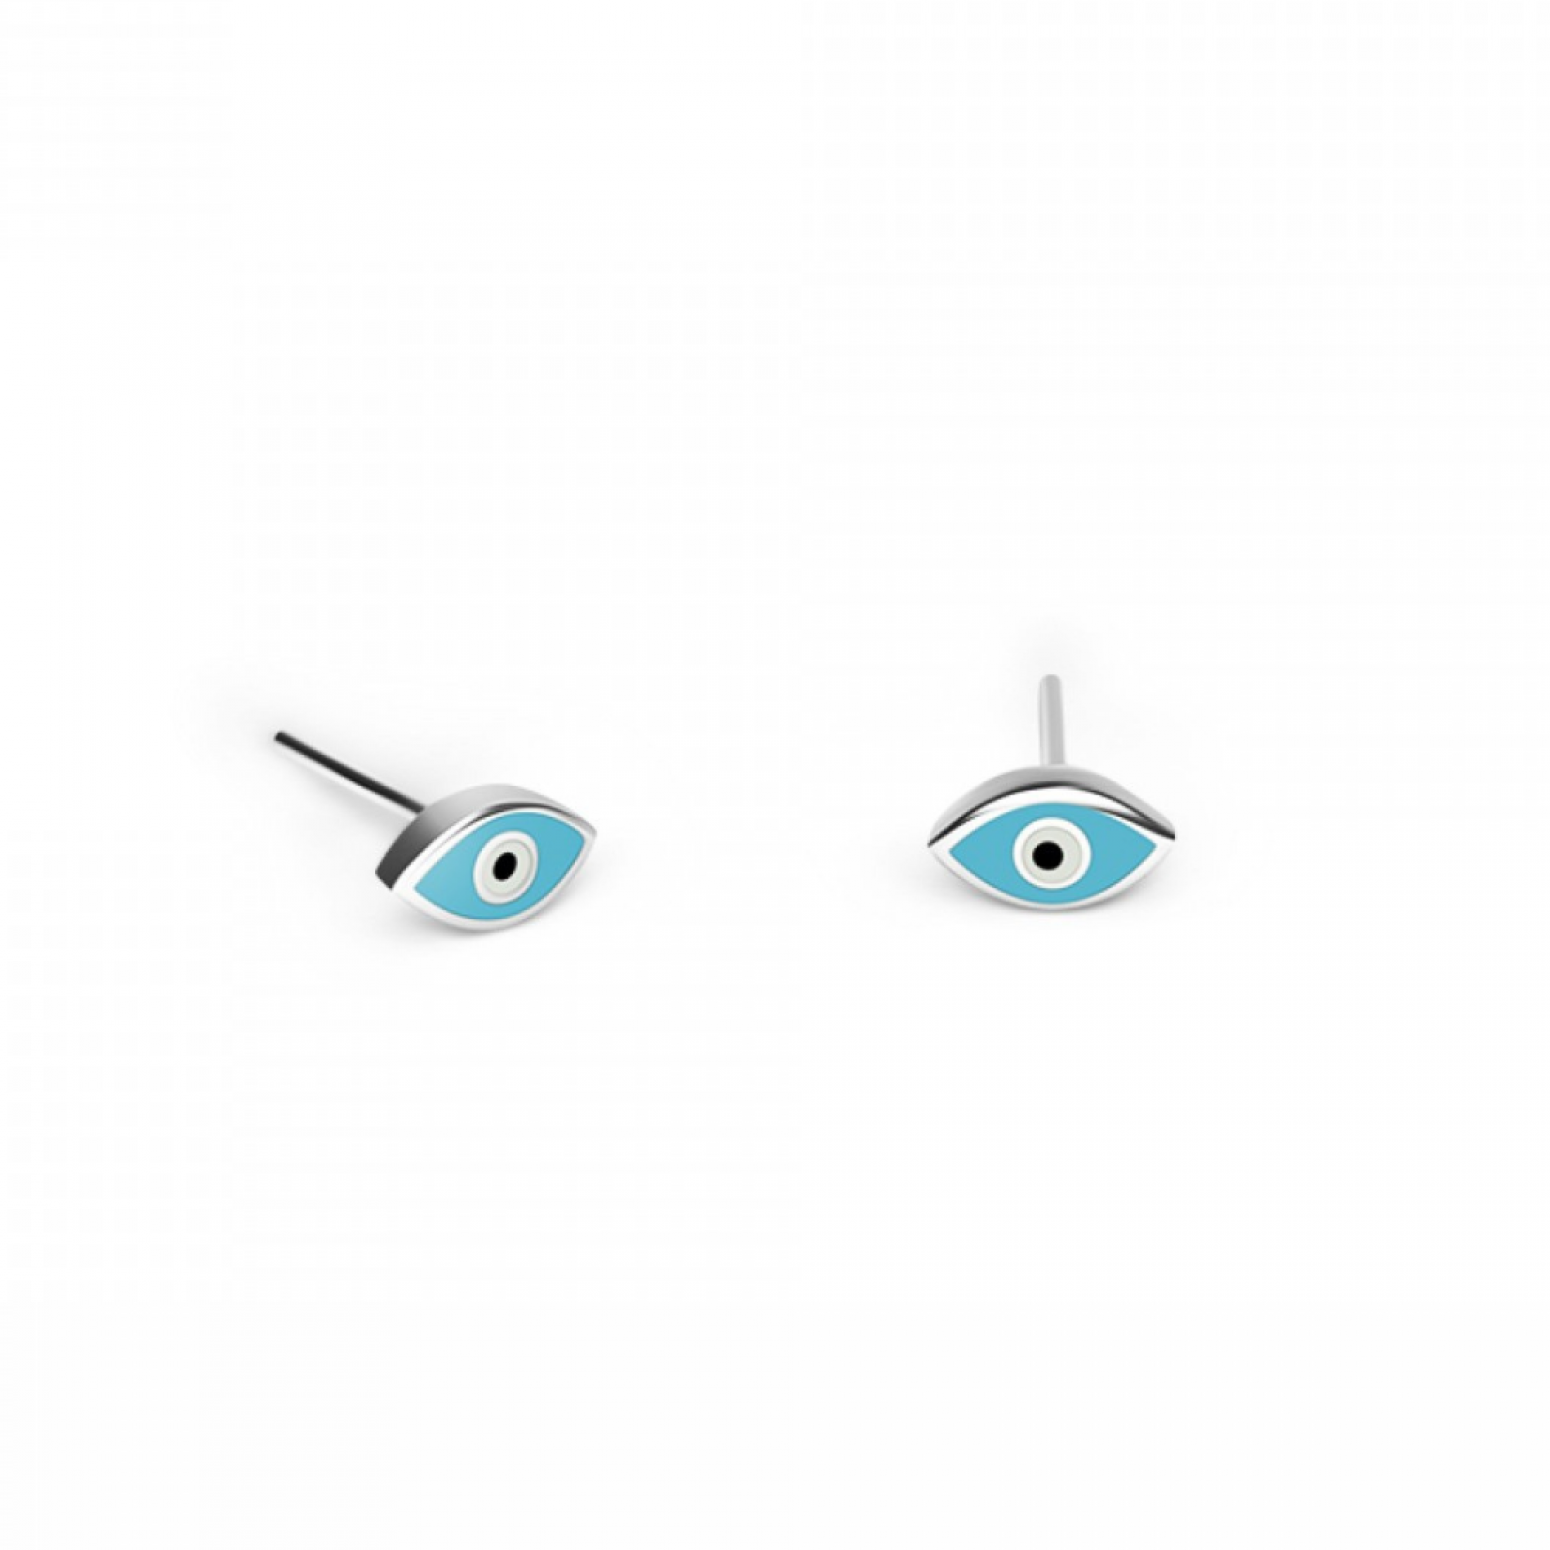 Eye earrings K9 white gold with enamel, sk3369 EARRINGS Κοσμηματα - chrilia.gr